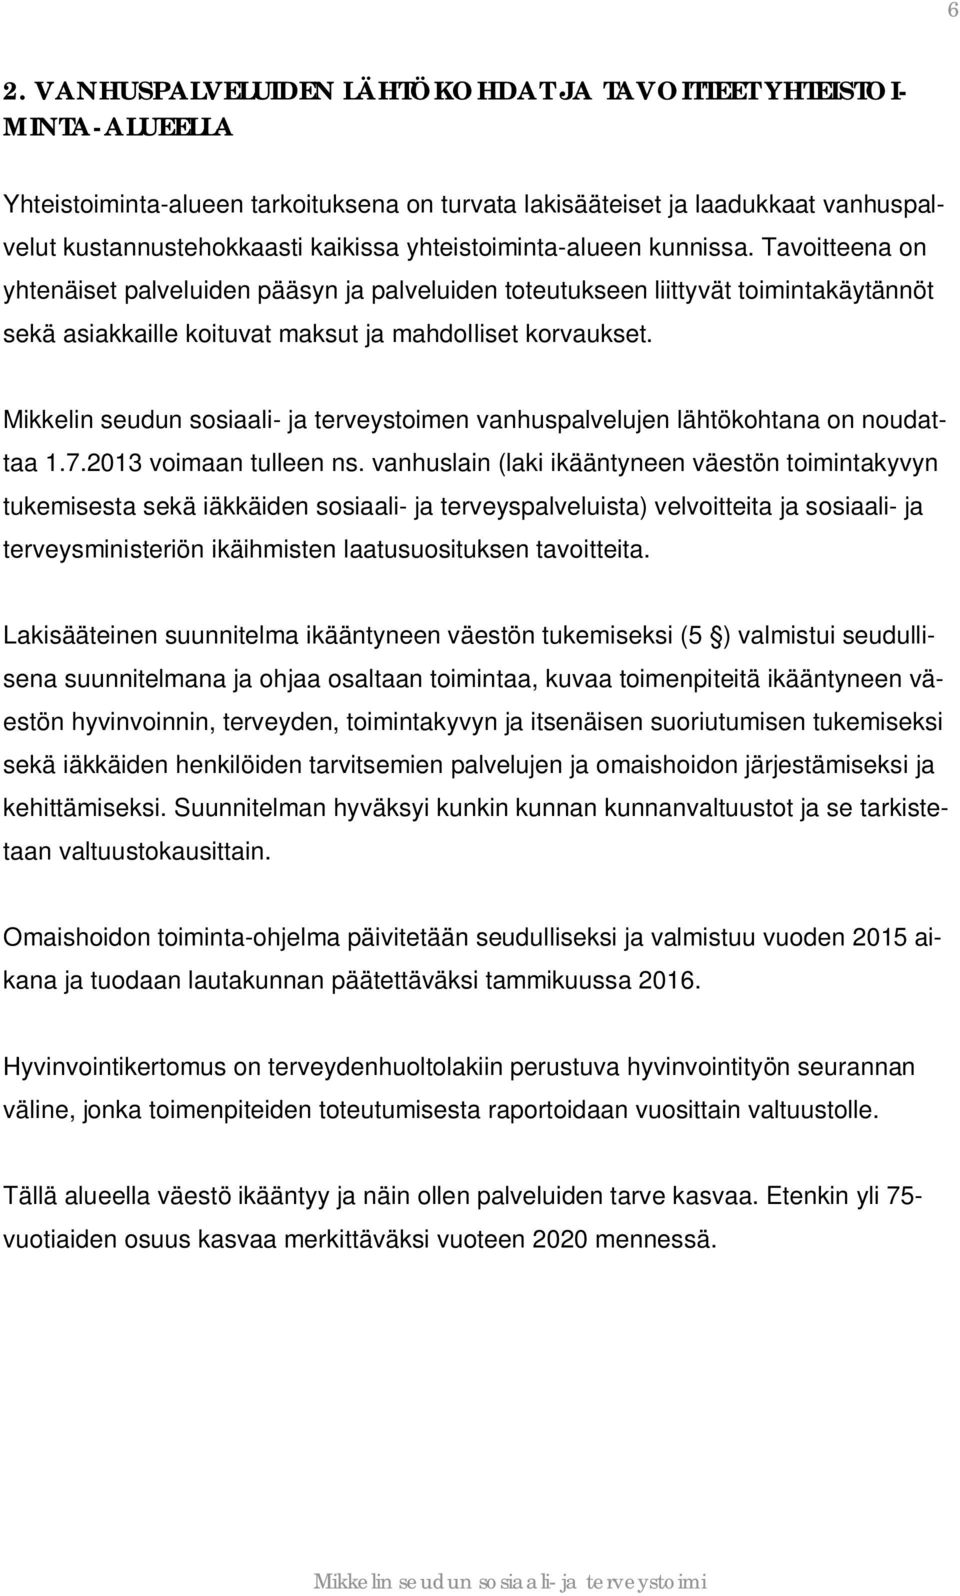 Mikkelin seudun sosiaali- ja terveystoimen vanhuspalvelujen lähtökohtana on noudattaa 1.7.2013 voimaan tulleen ns.